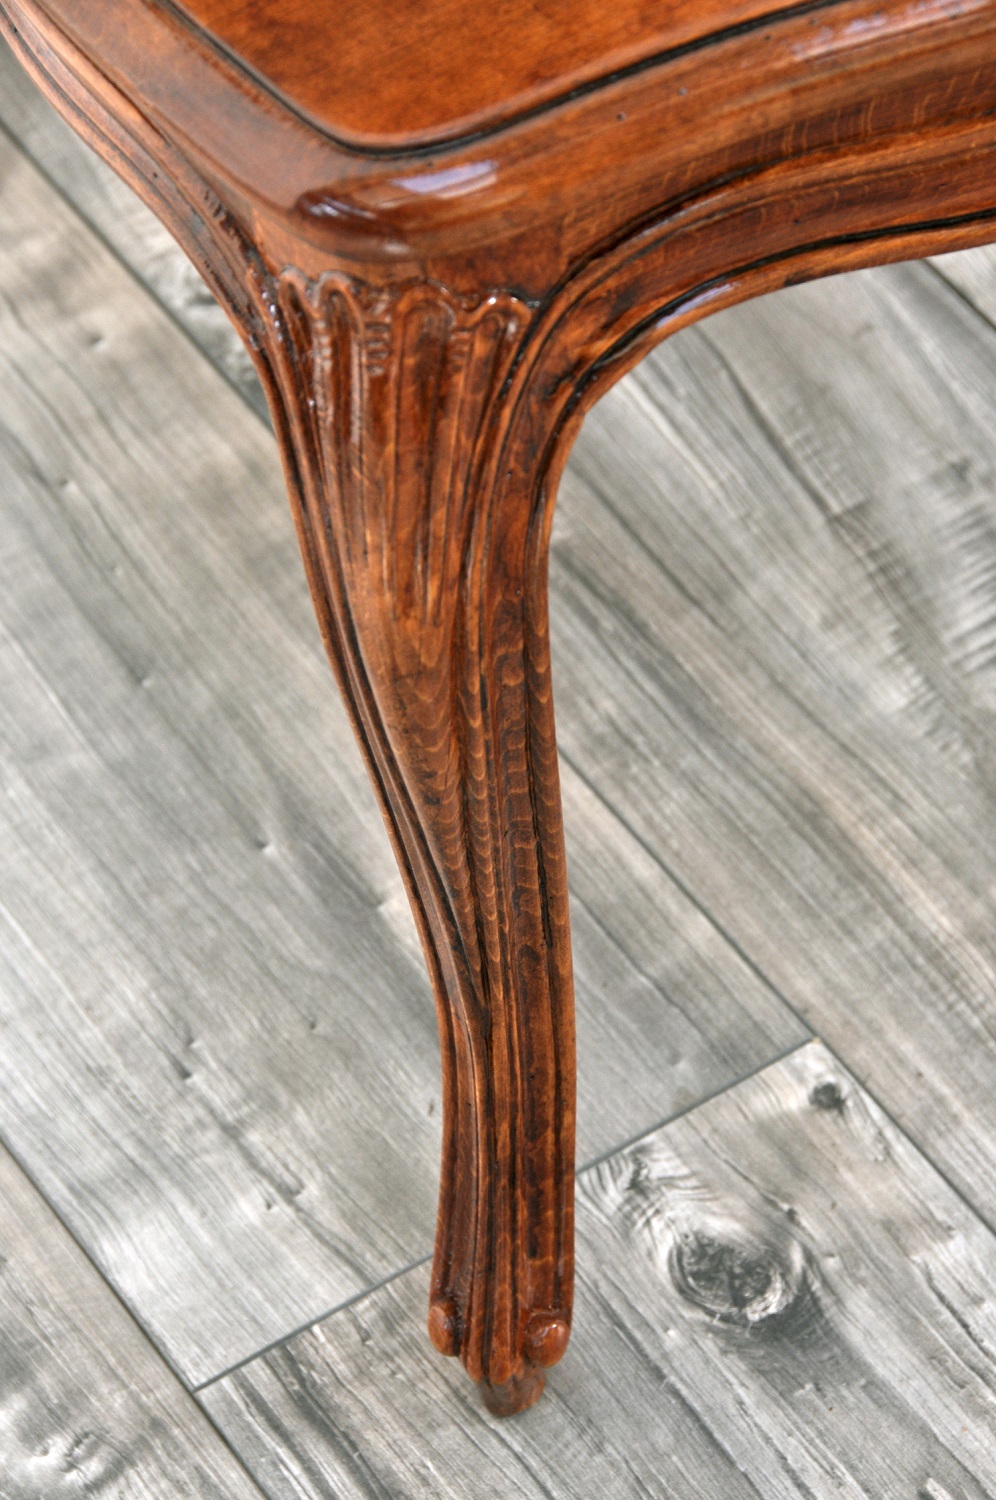 sedia costruita e riprodotta a mano nello stile barocco 700 veneziano con gamba intagliata e sagomata a riccio tipica linea degli arredi veneziani di lusso